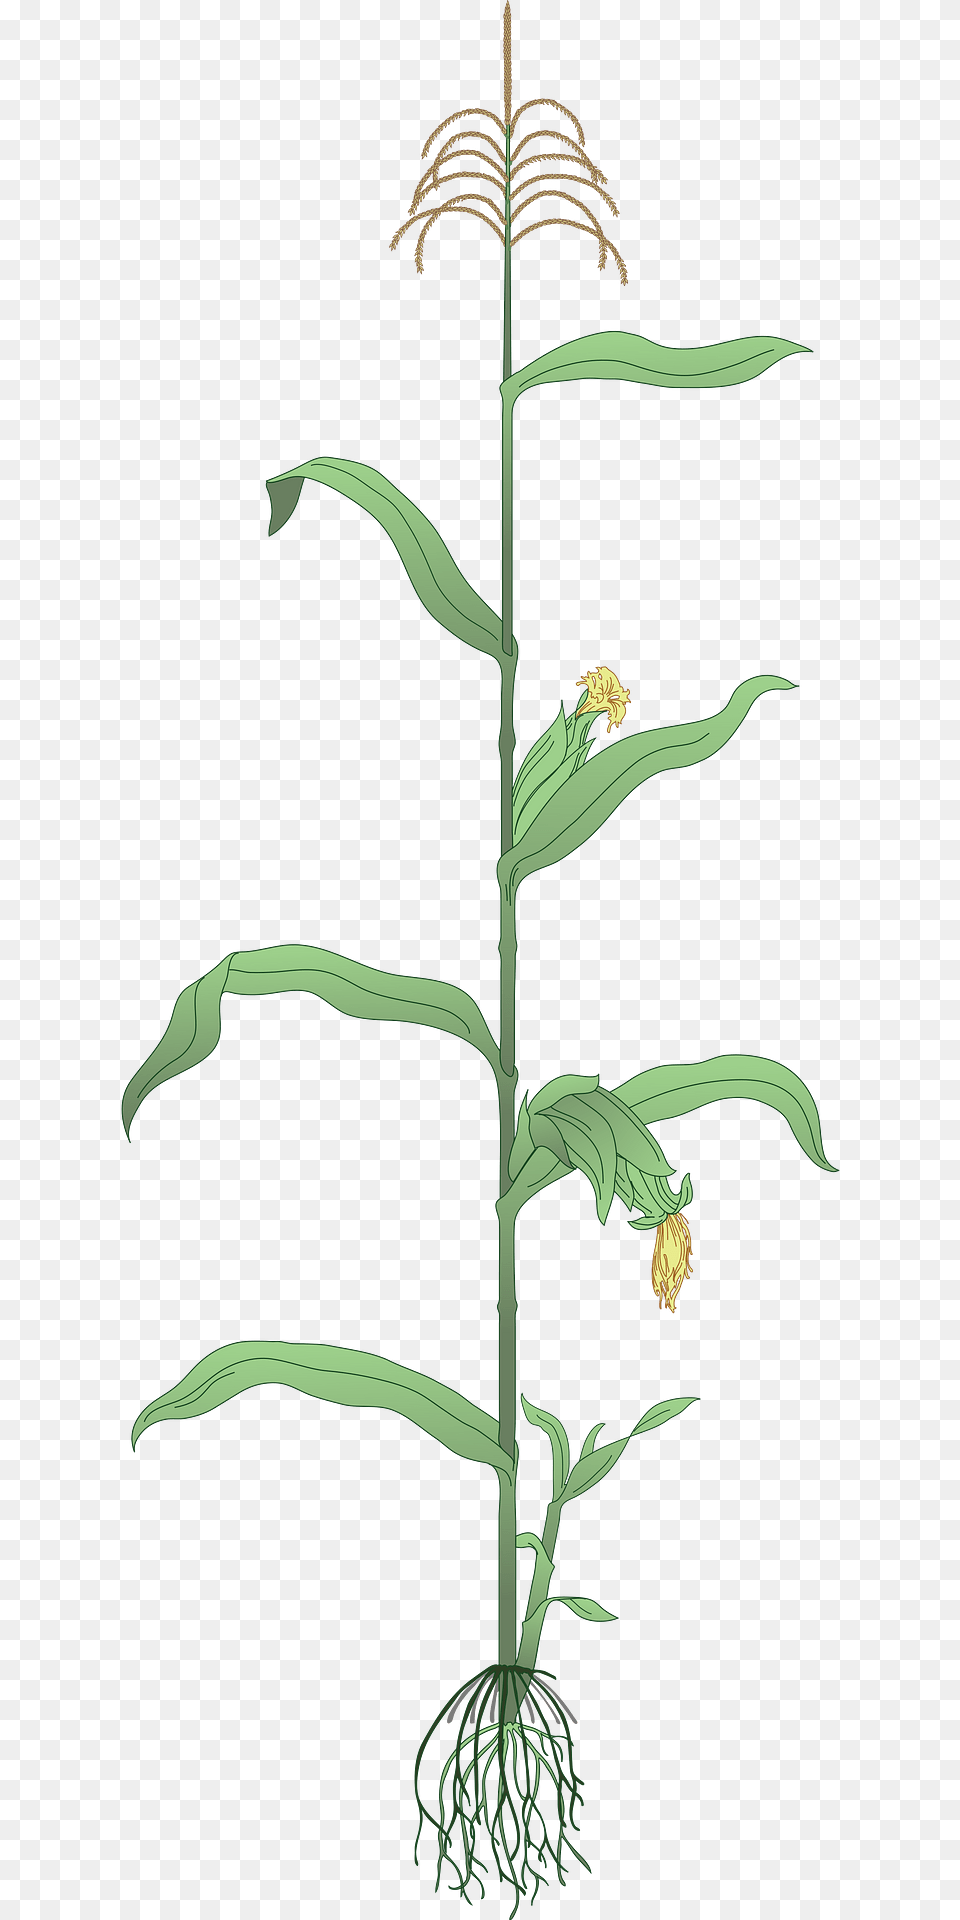 Maize Plant Clipart, Grass, Vegetation, Green, Flower Png